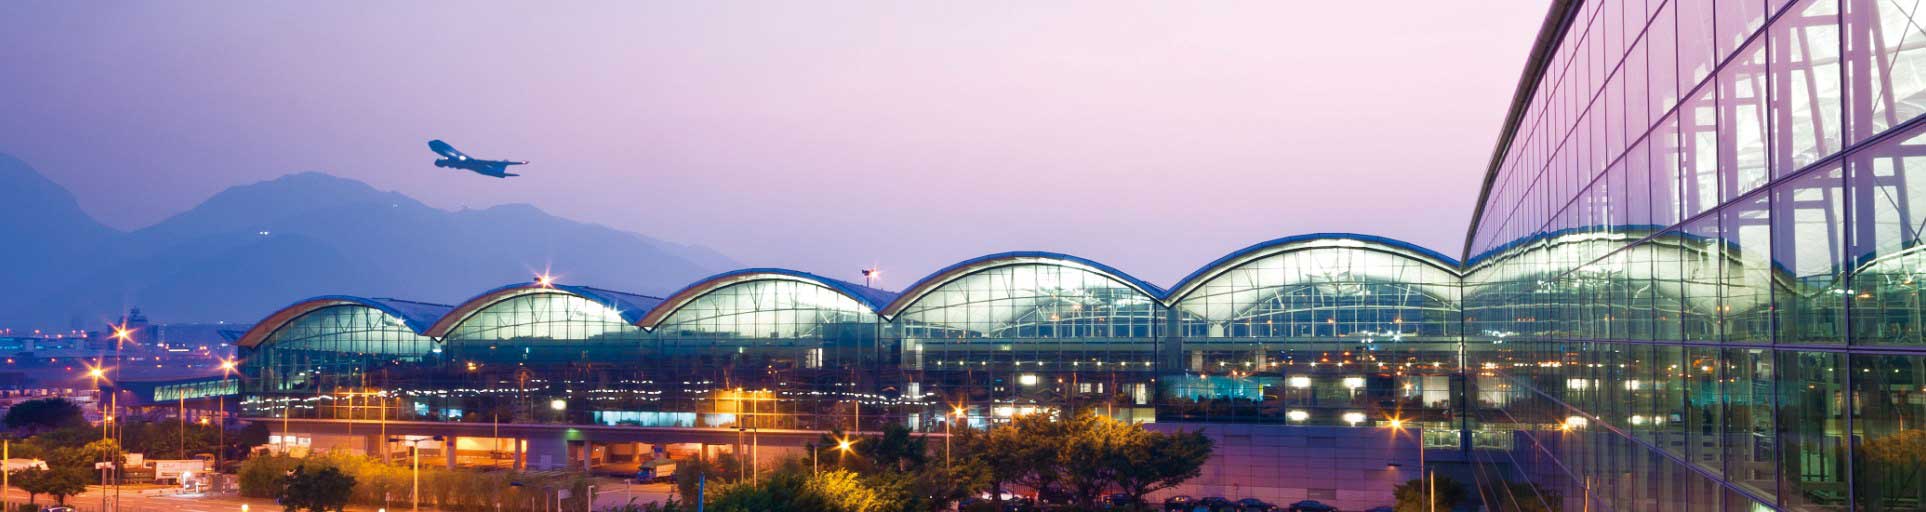 Hong Kong International Airport-Hebei Zaoqiang Dacheng Rubber Co.,Ltd